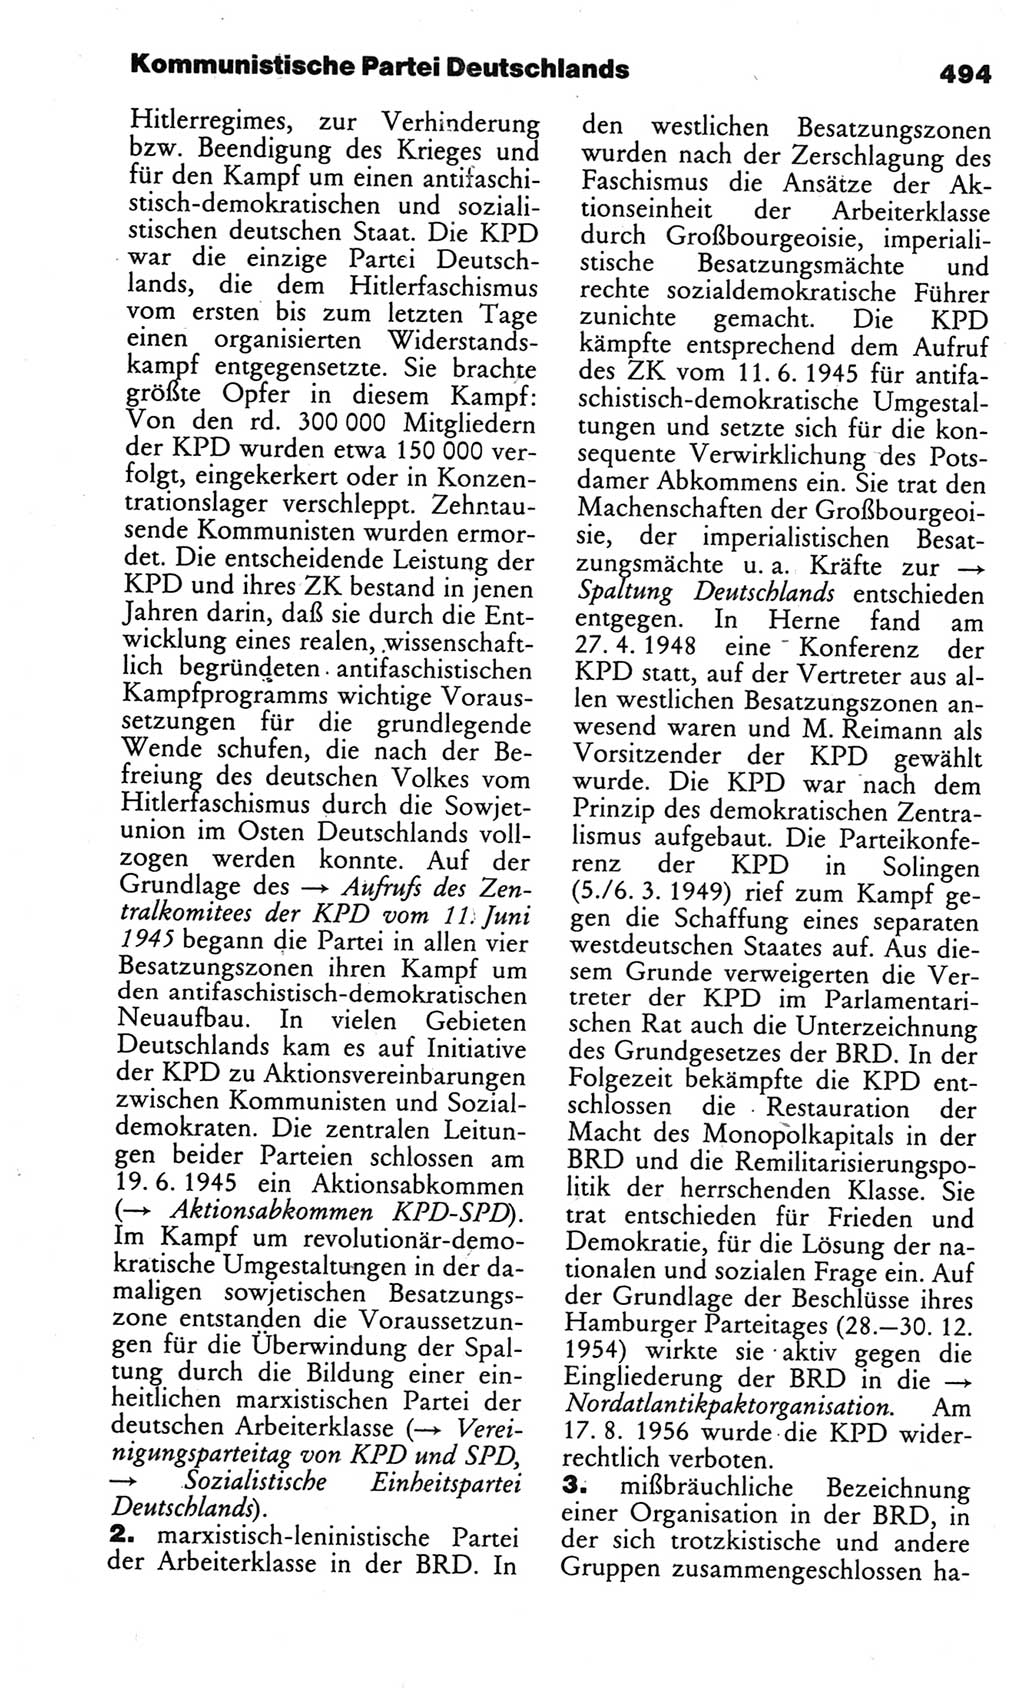 Kleines politisches Wörterbuch [Deutsche Demokratische Republik (DDR)] 1986, Seite 494 (Kl. pol. Wb. DDR 1986, S. 494)